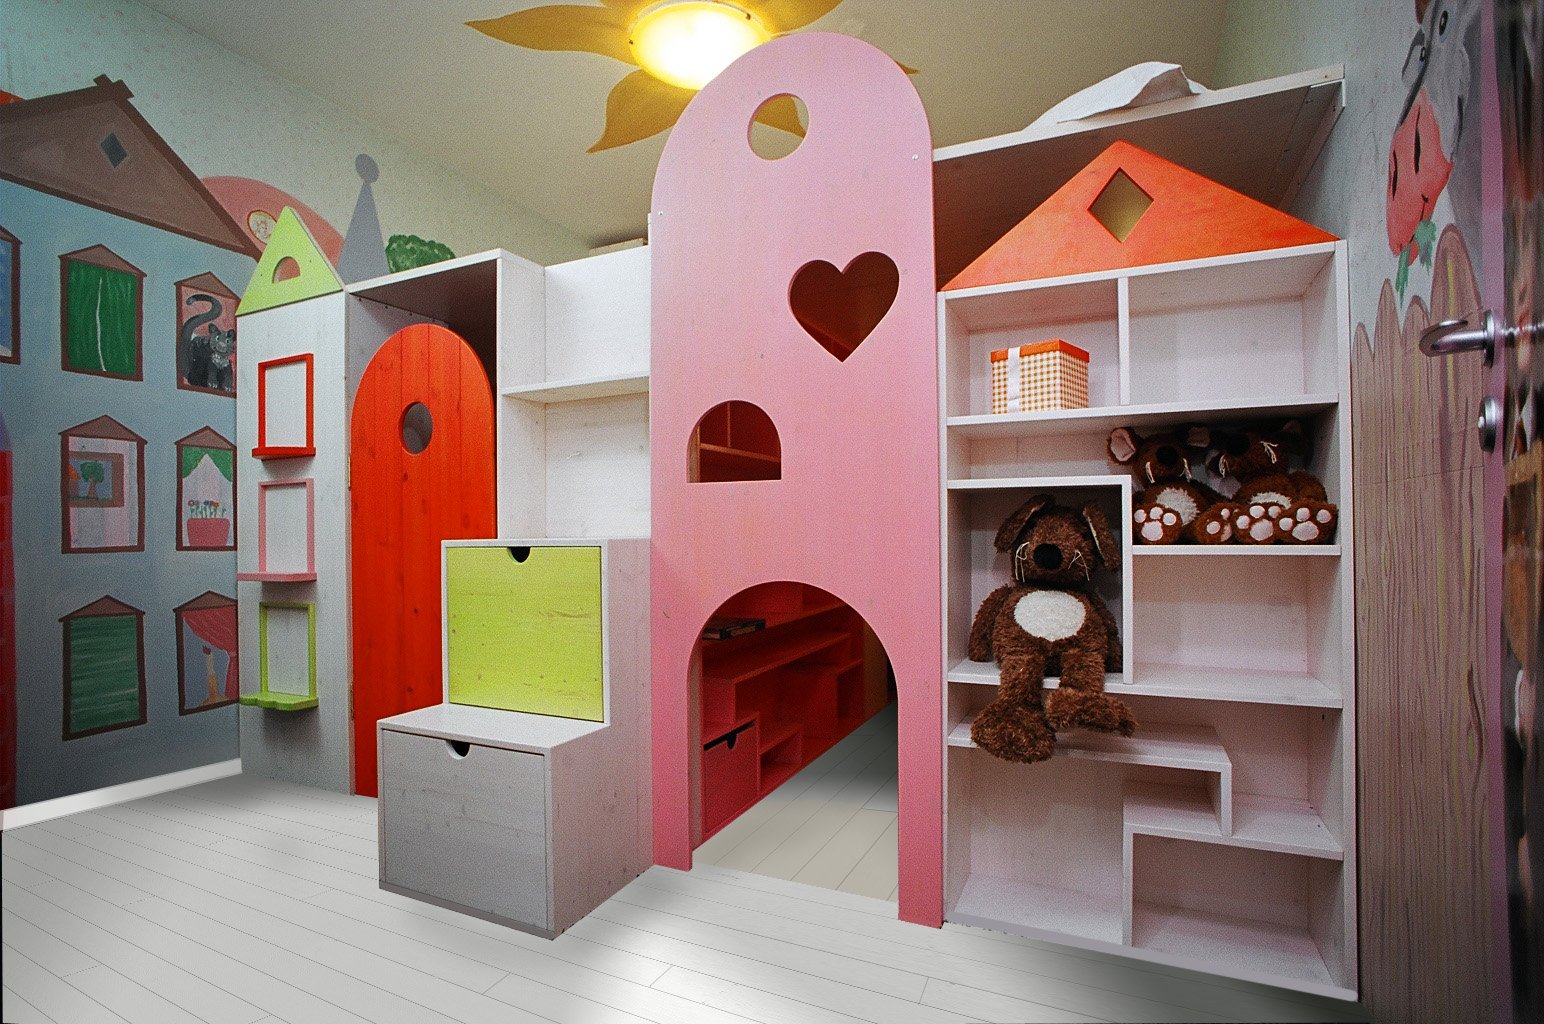 мебель детская для мальчиков в детском саду